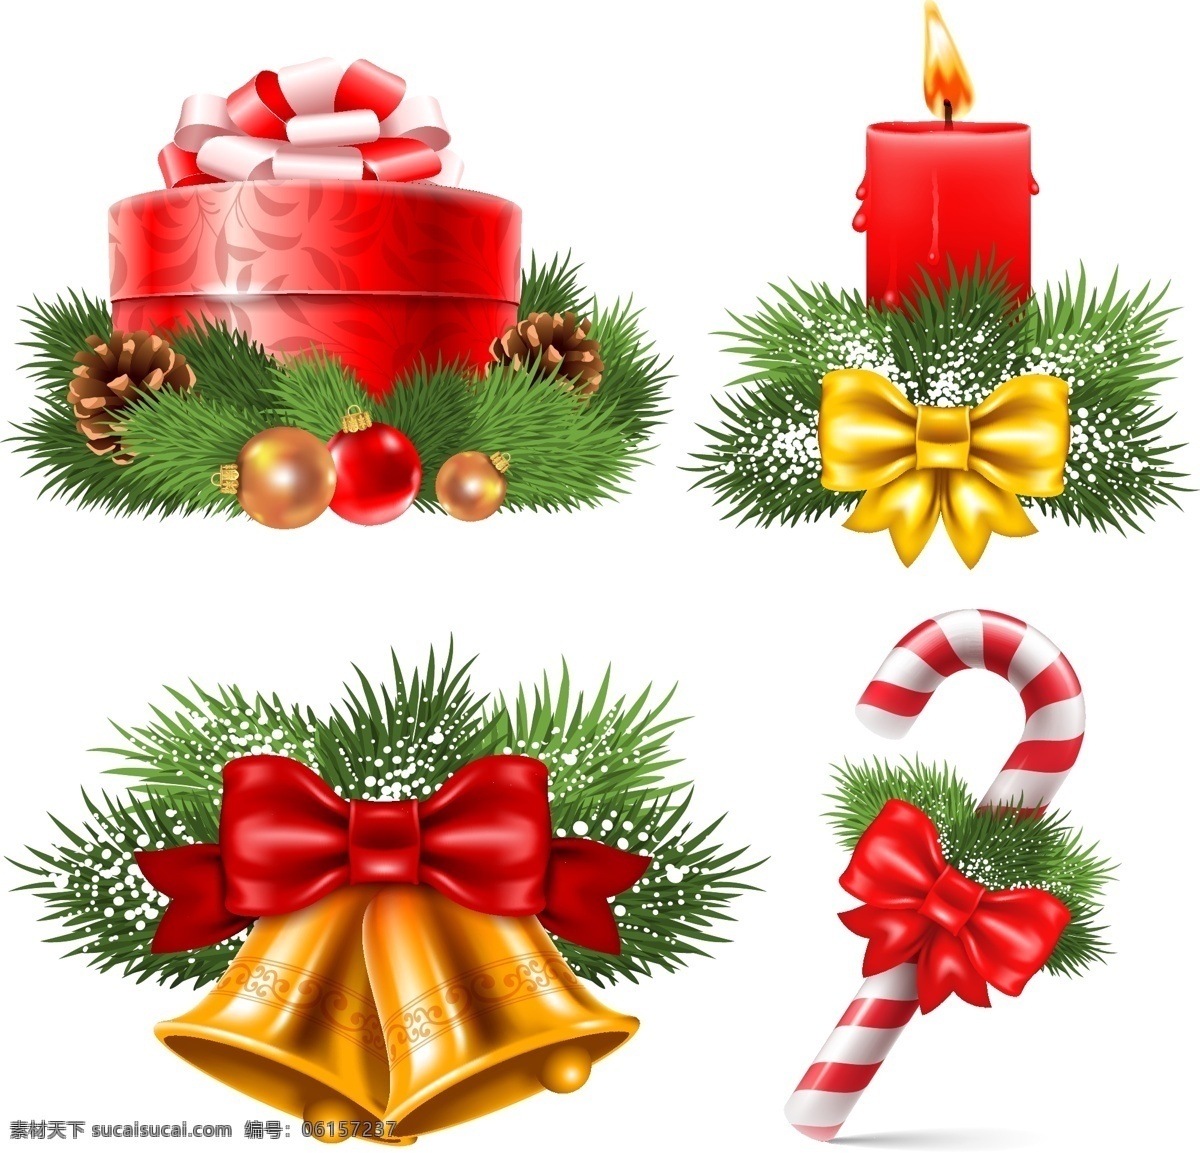 圣诞节 挂失 蝴蝶结 蜡烛 礼物 铃铛 圣诞拐杖 圣诞球 松枝 节日素材